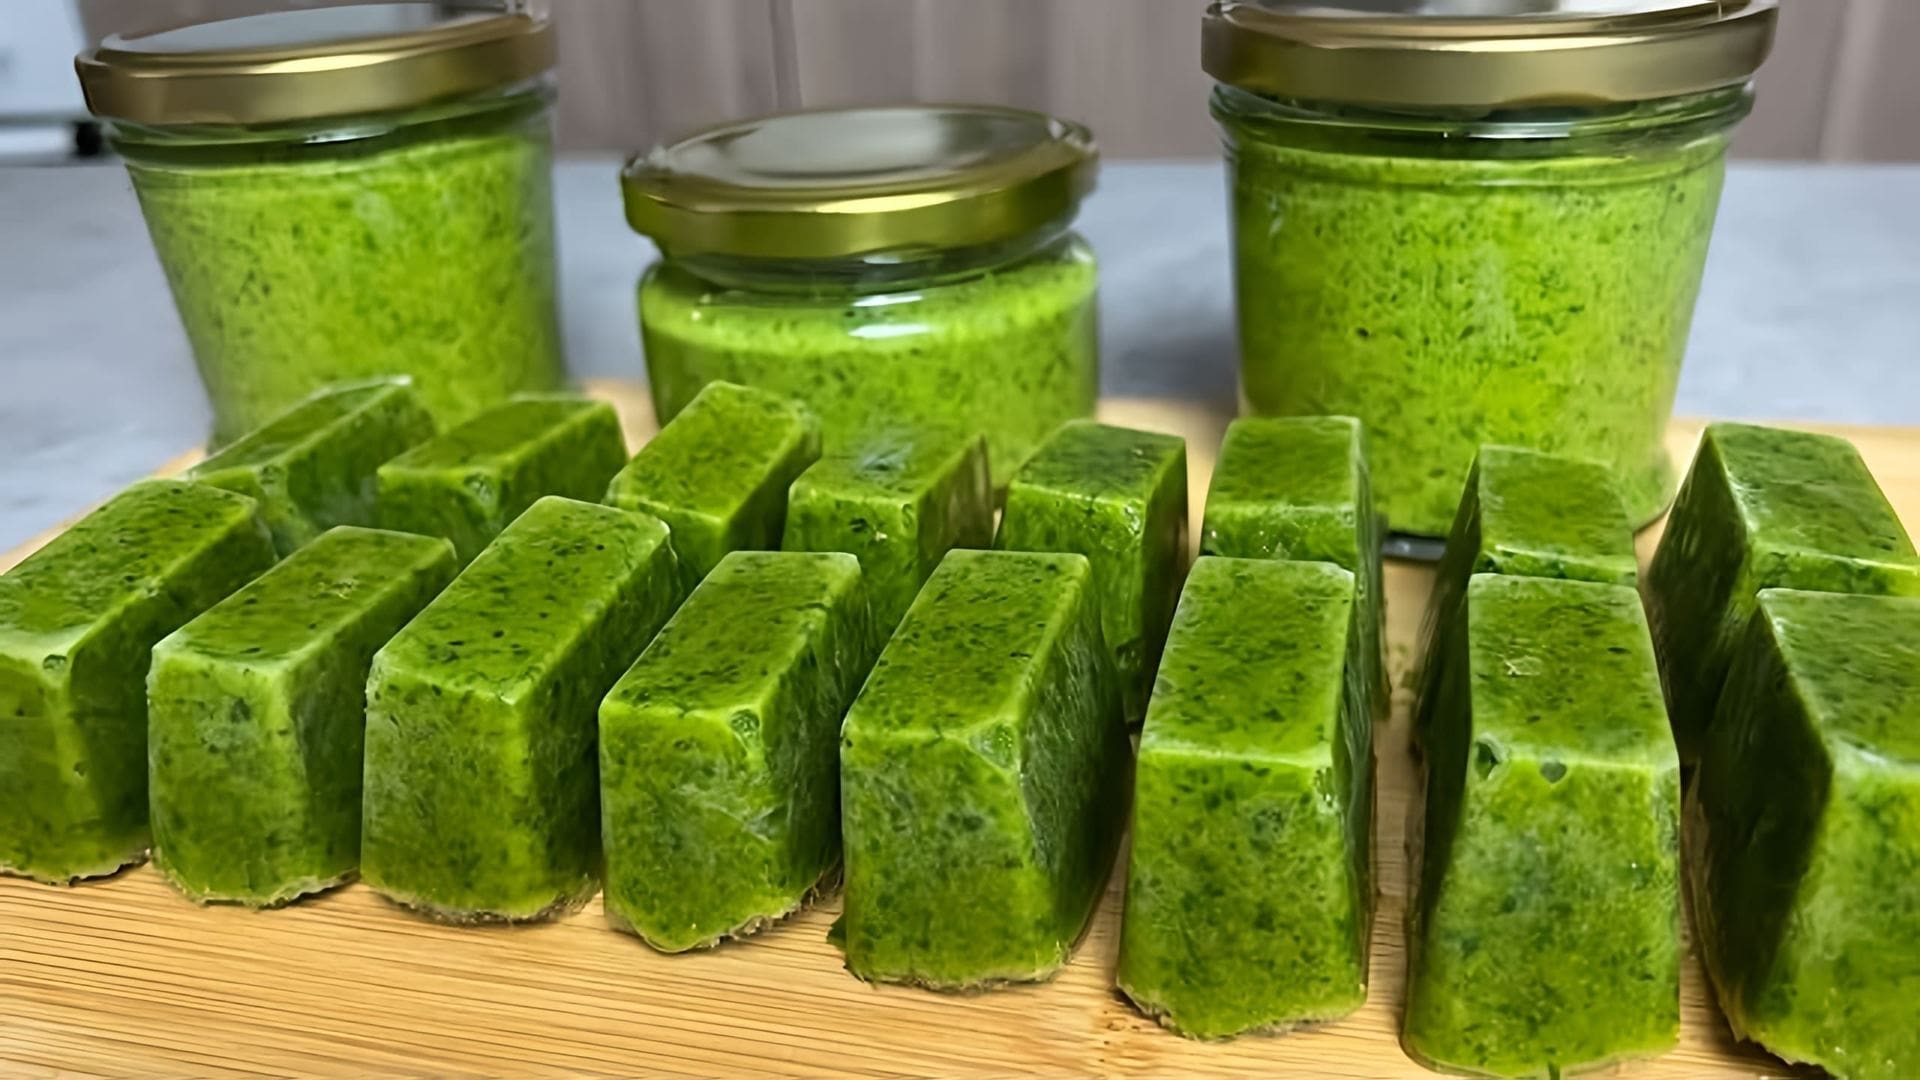 Видео рассказывает о том, как сохранить зеленый лук на зиму, приготовив травяной соус